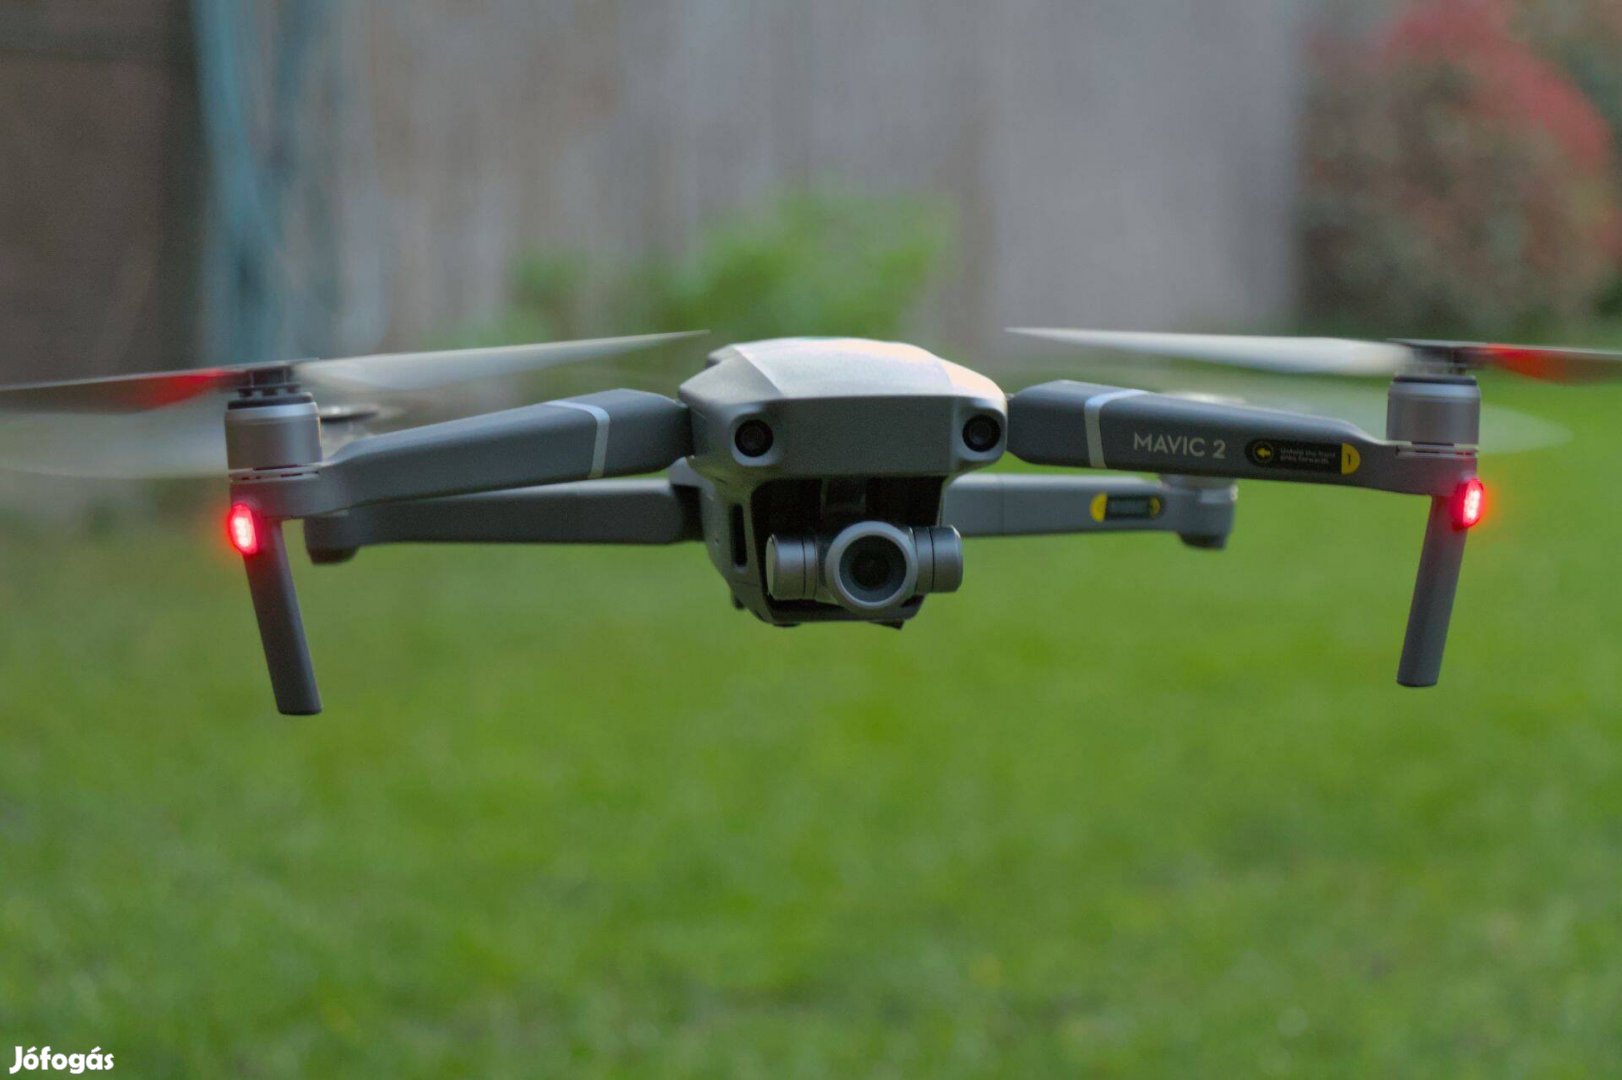 DJI Mavic 2 Zoom - 2 akksival, kemény táskával (drón, drone)